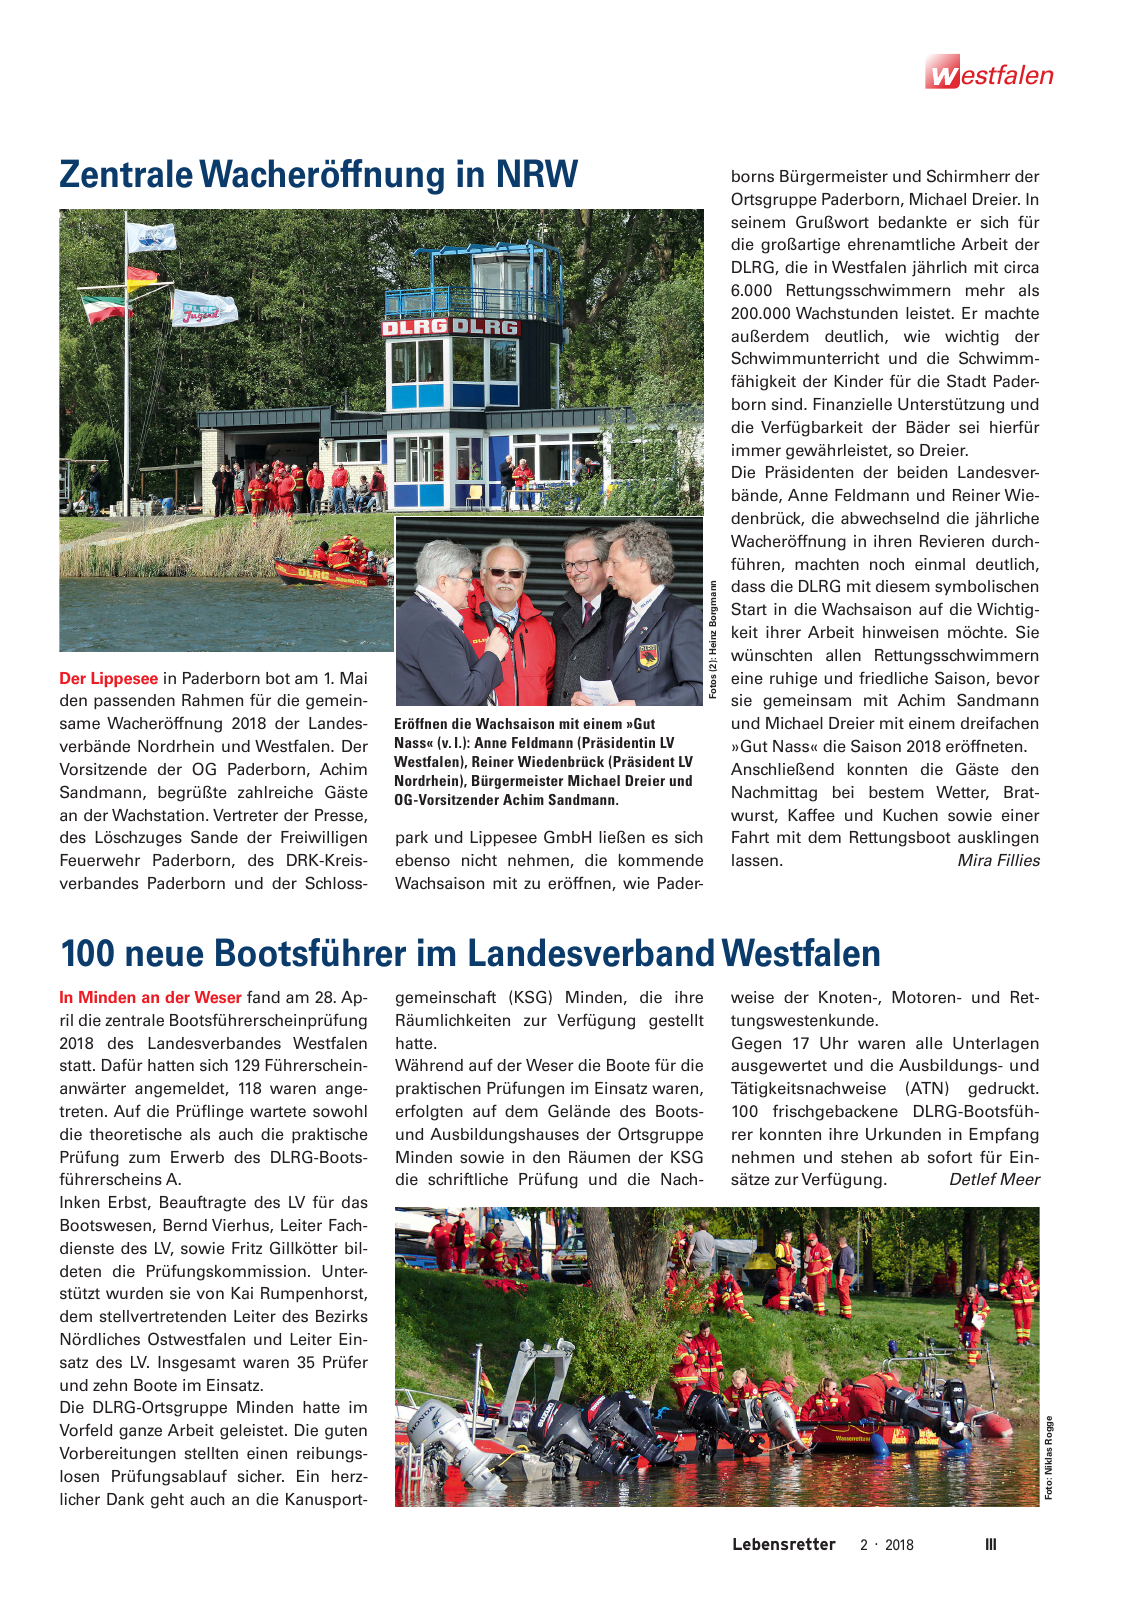 Vorschau Lebensretter 2/2018 - Regionalausgabe Westfalen Seite 5